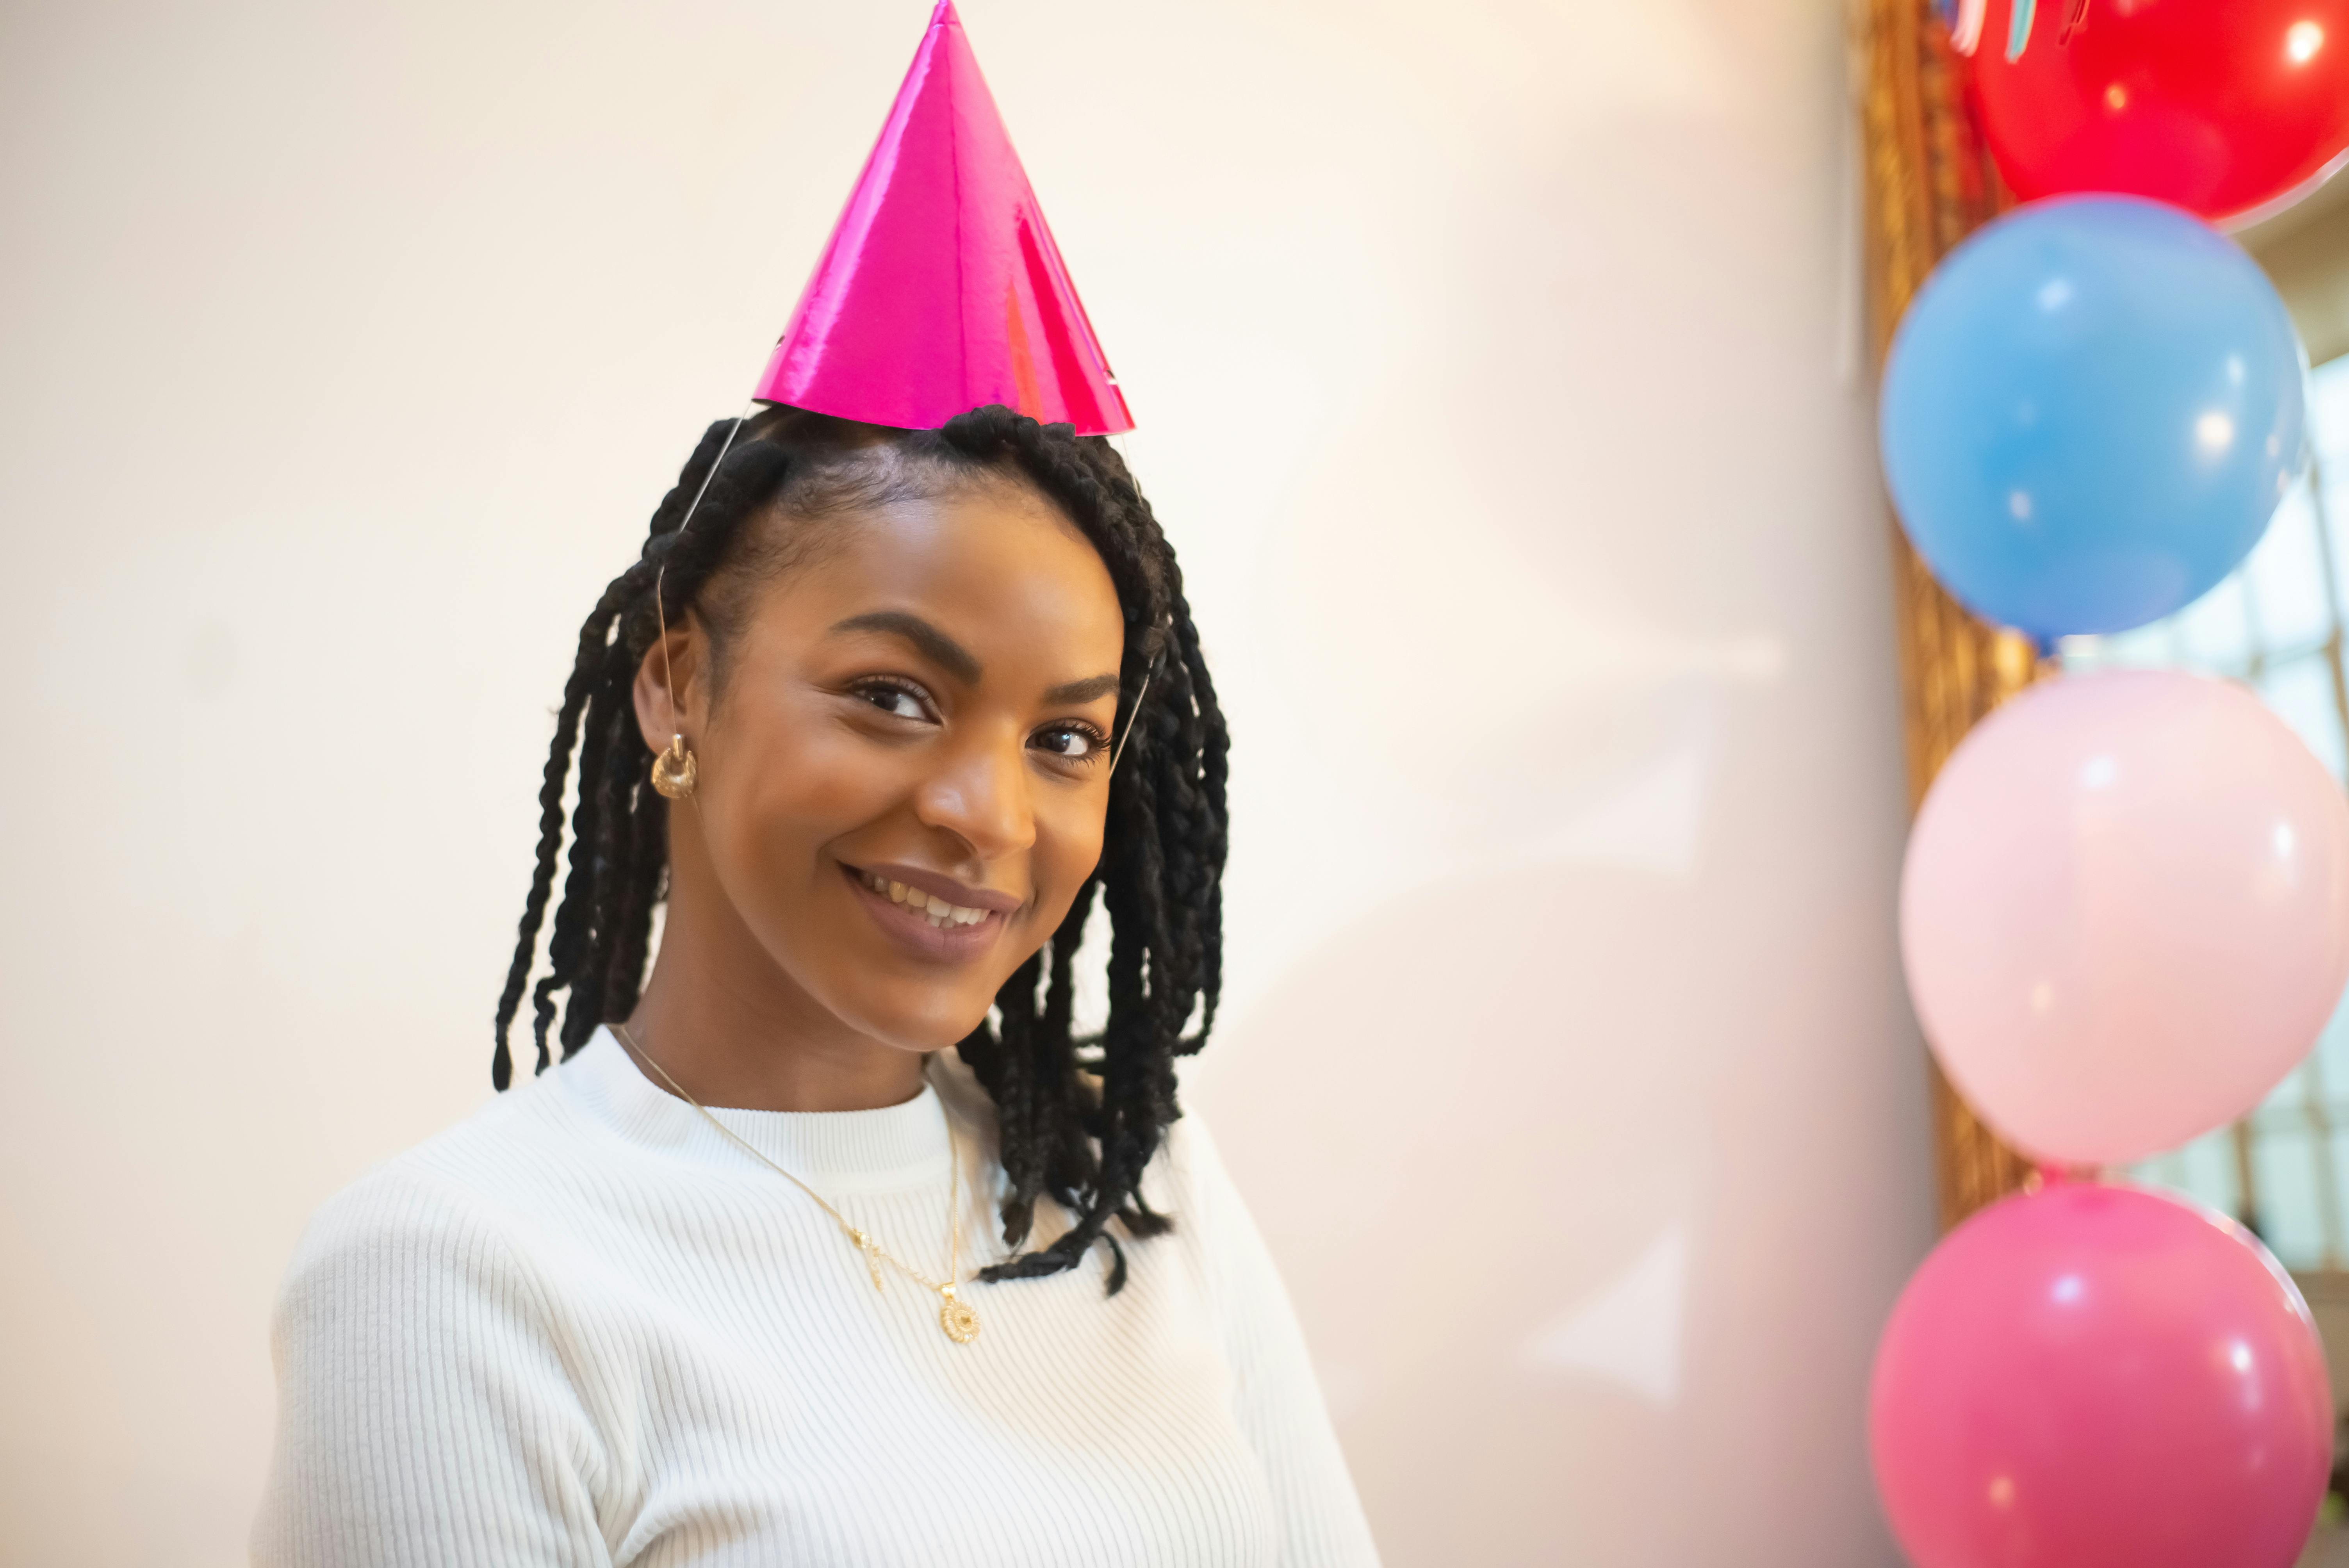 Una mujer feliz con un sombrero de fiesta | Fuente: Pexels